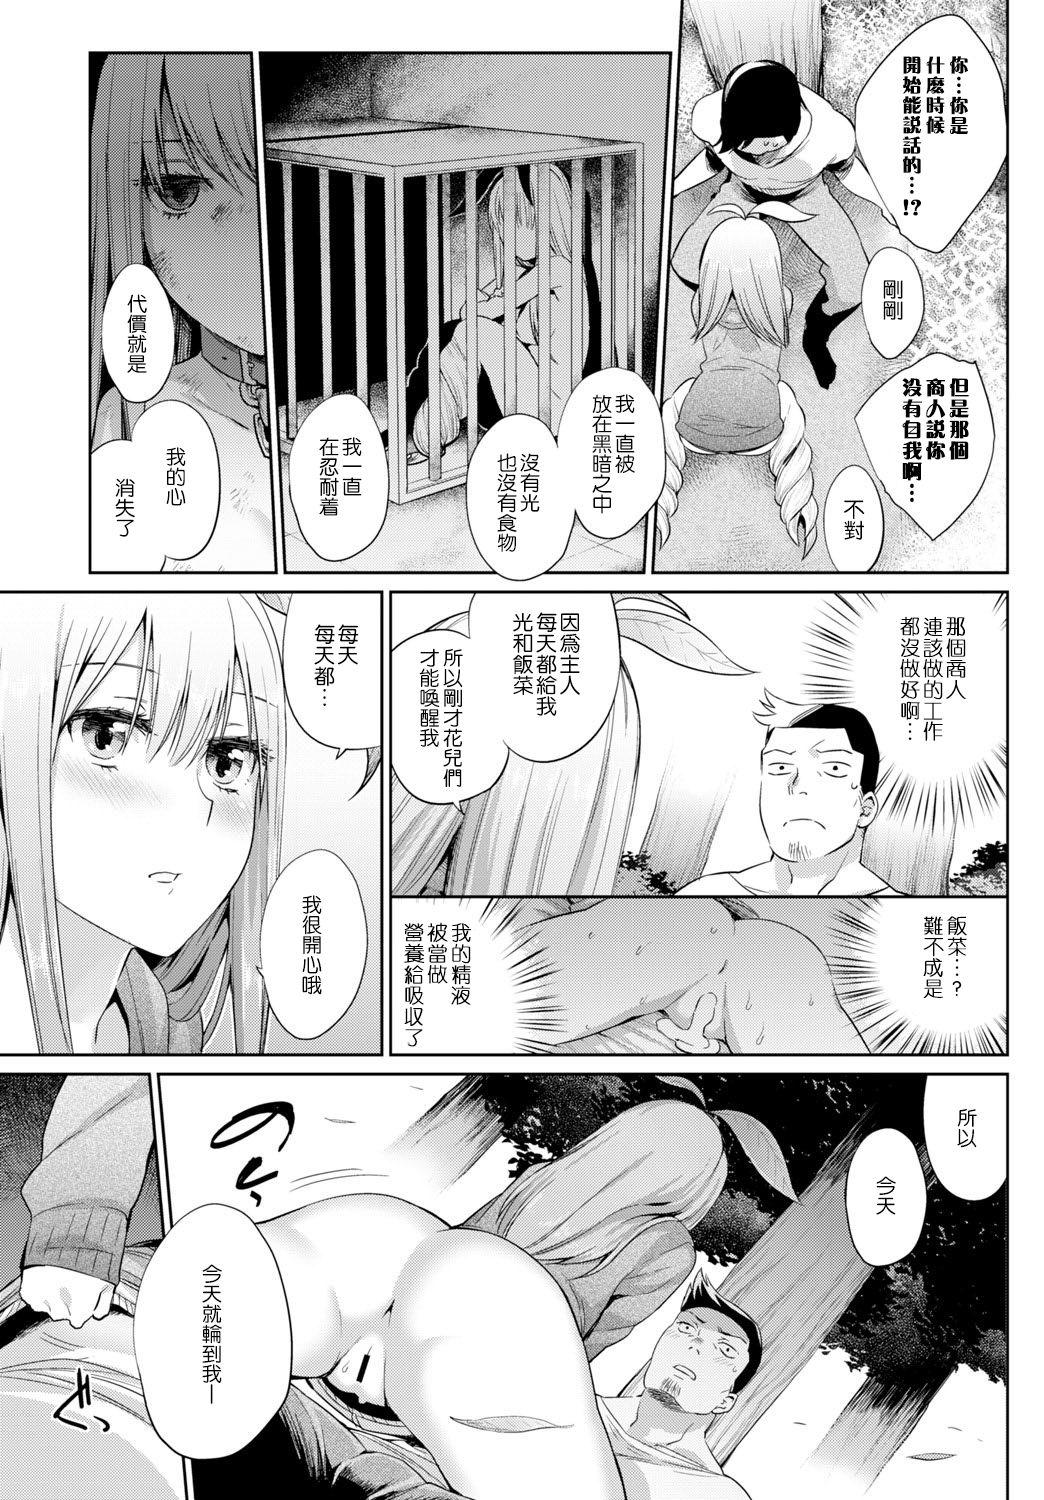 Perfect Shokubutsu no Sodate Kata Chicks - Page 12